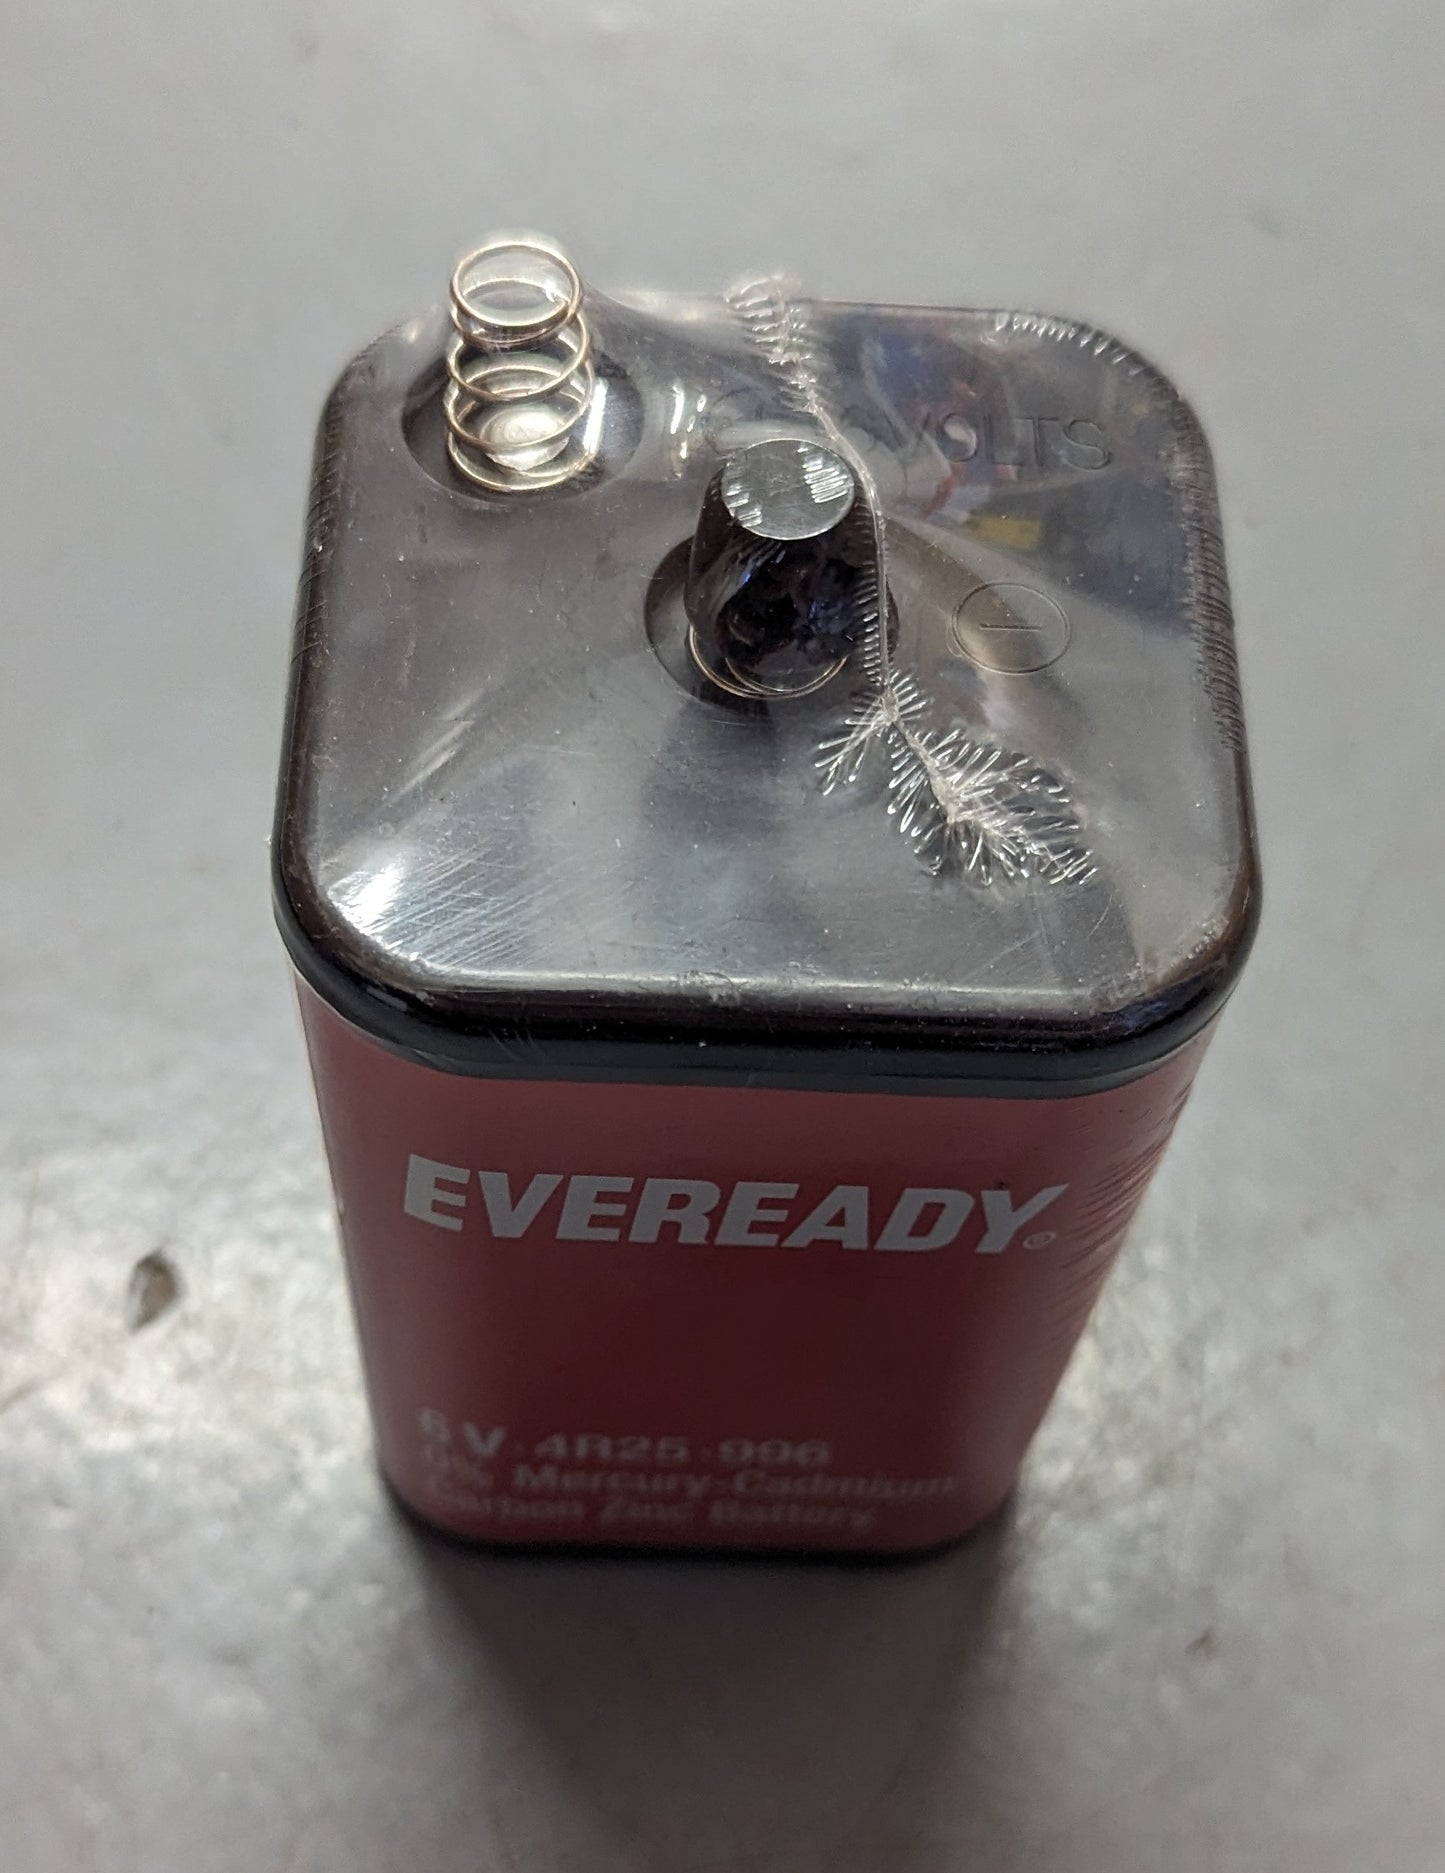 Eveready 6V 4R25  Battery